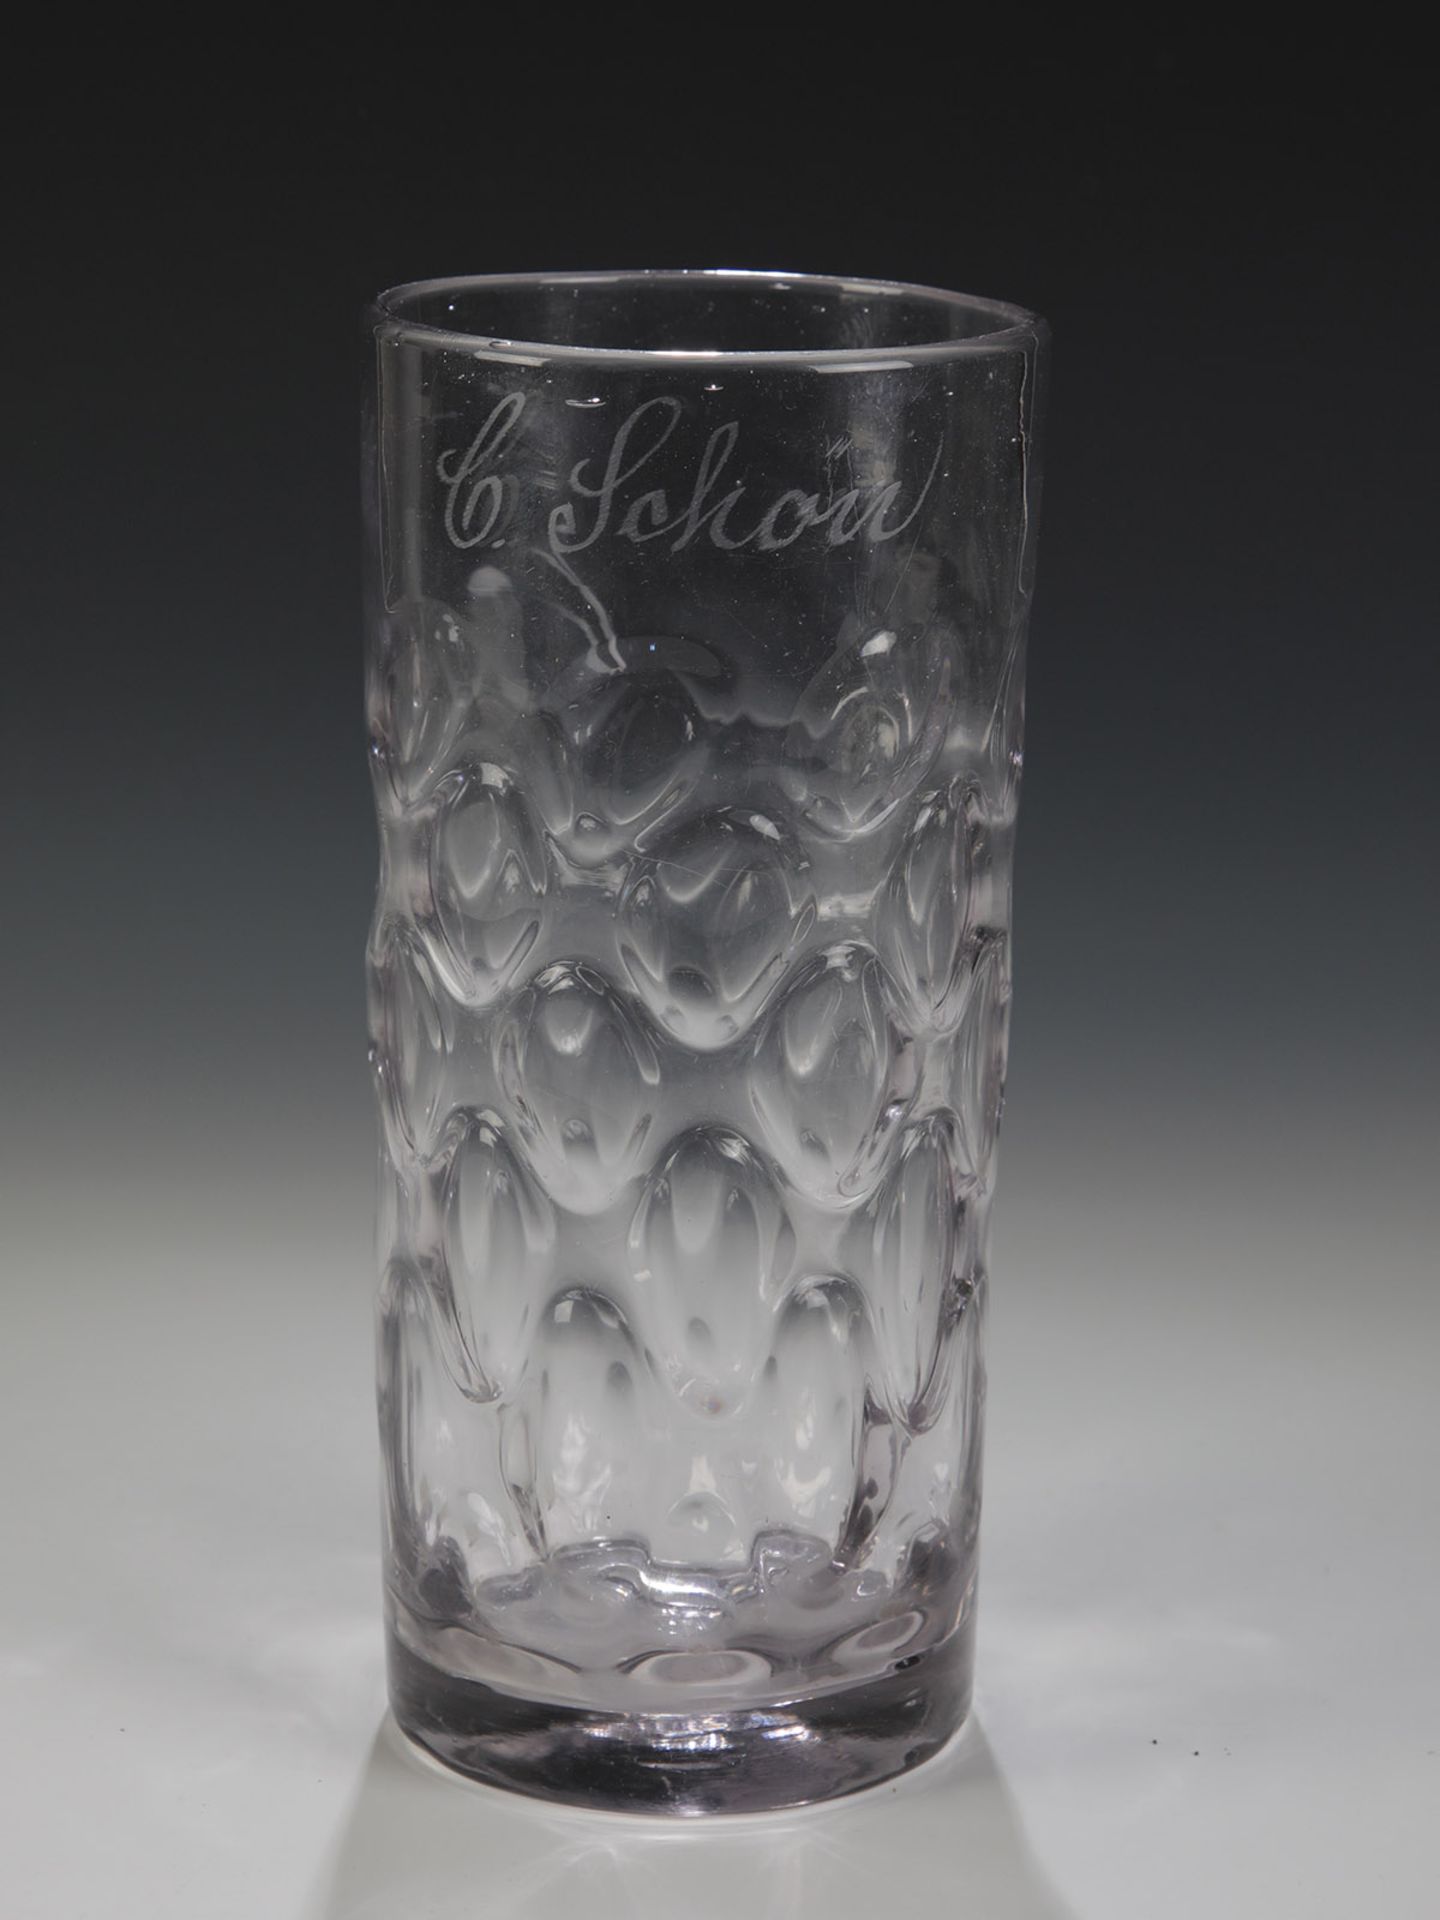 Bierstange mit optischem DekorMitteldeutschland, 19. Jh. Graumangan-stichiges Glas mit Abriss und